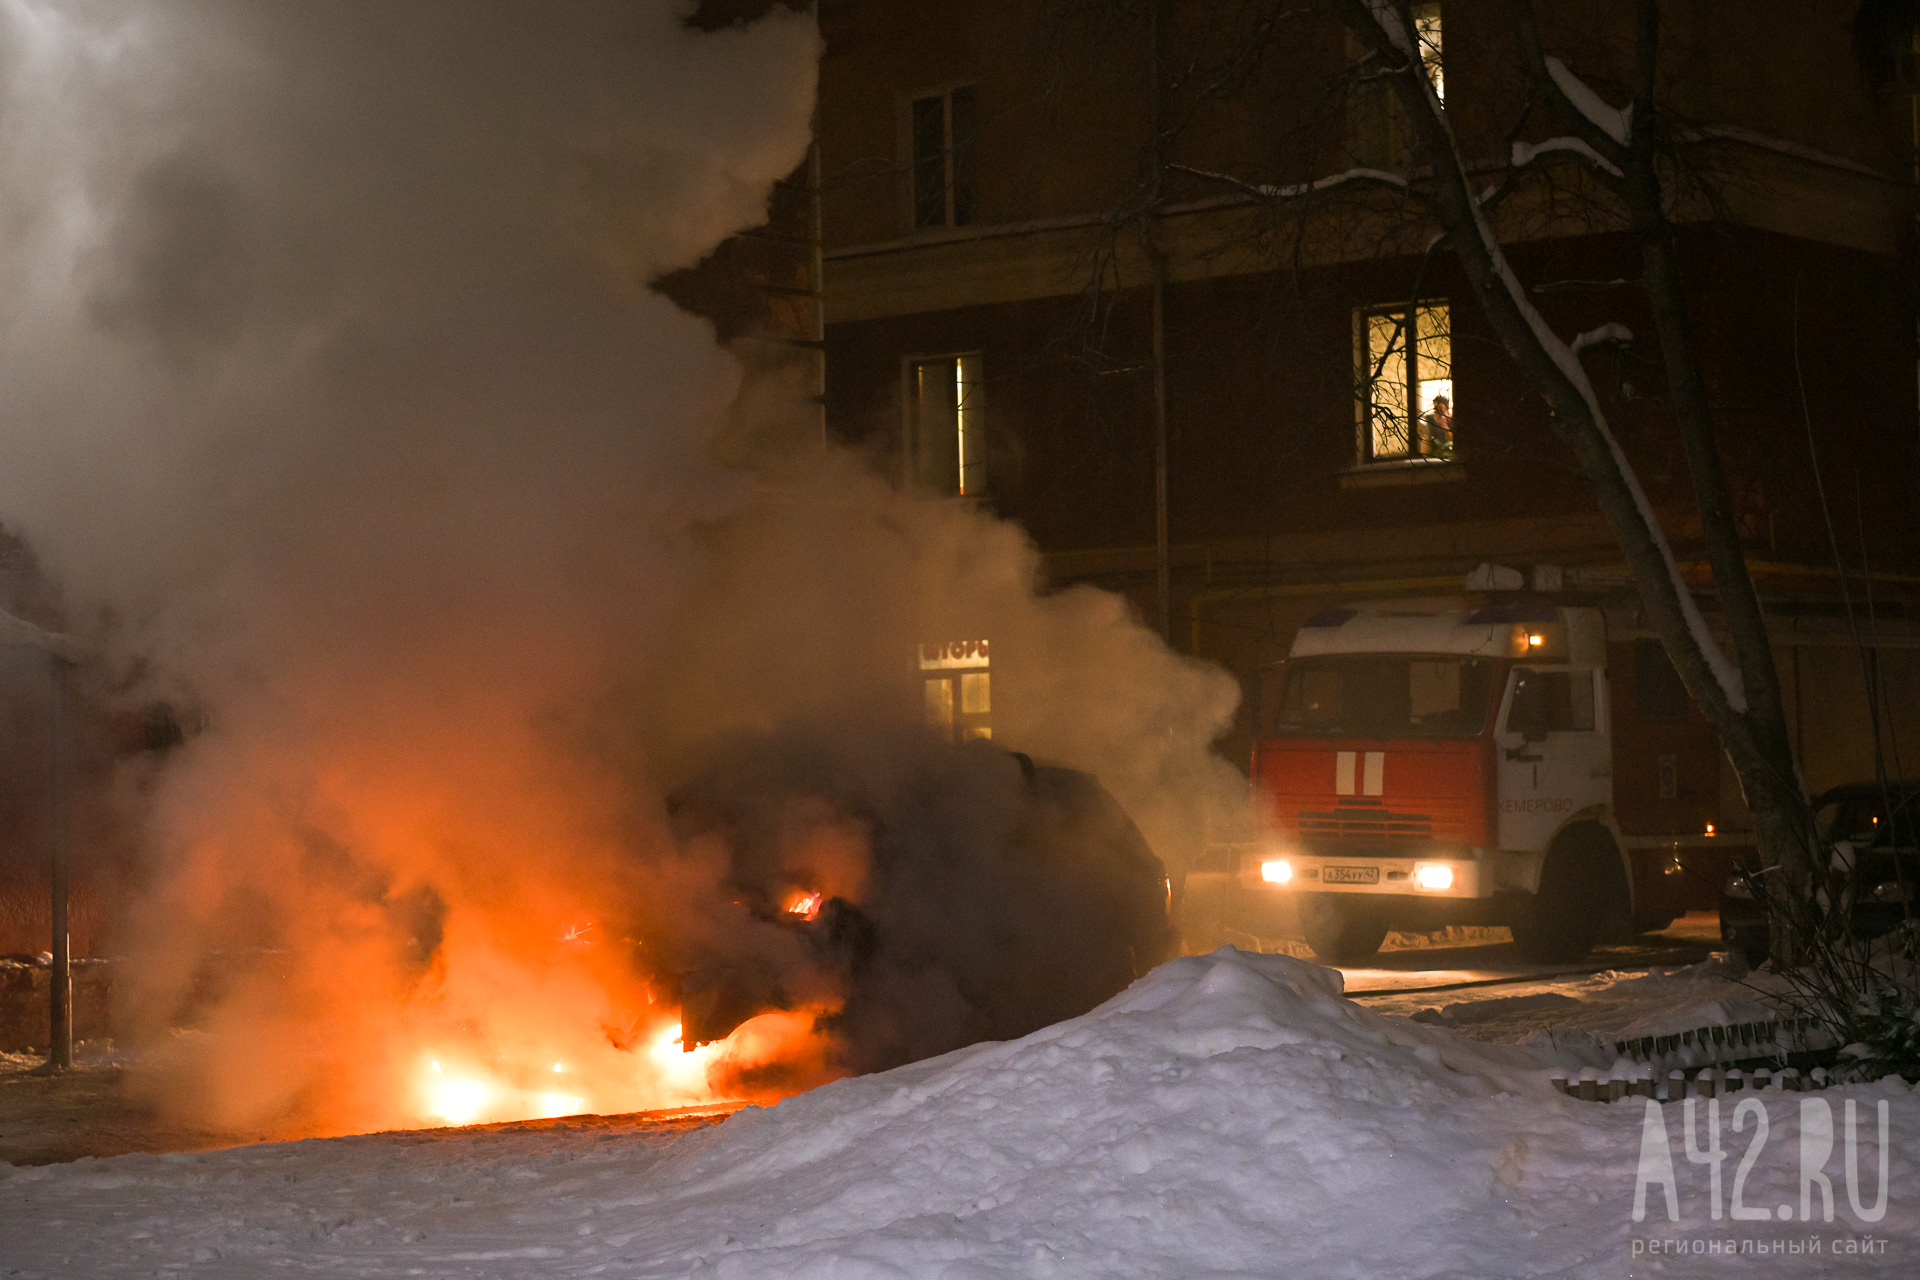 Ночью кузбасские пожарные за 13 минут потушили загоревшийся автомобиль